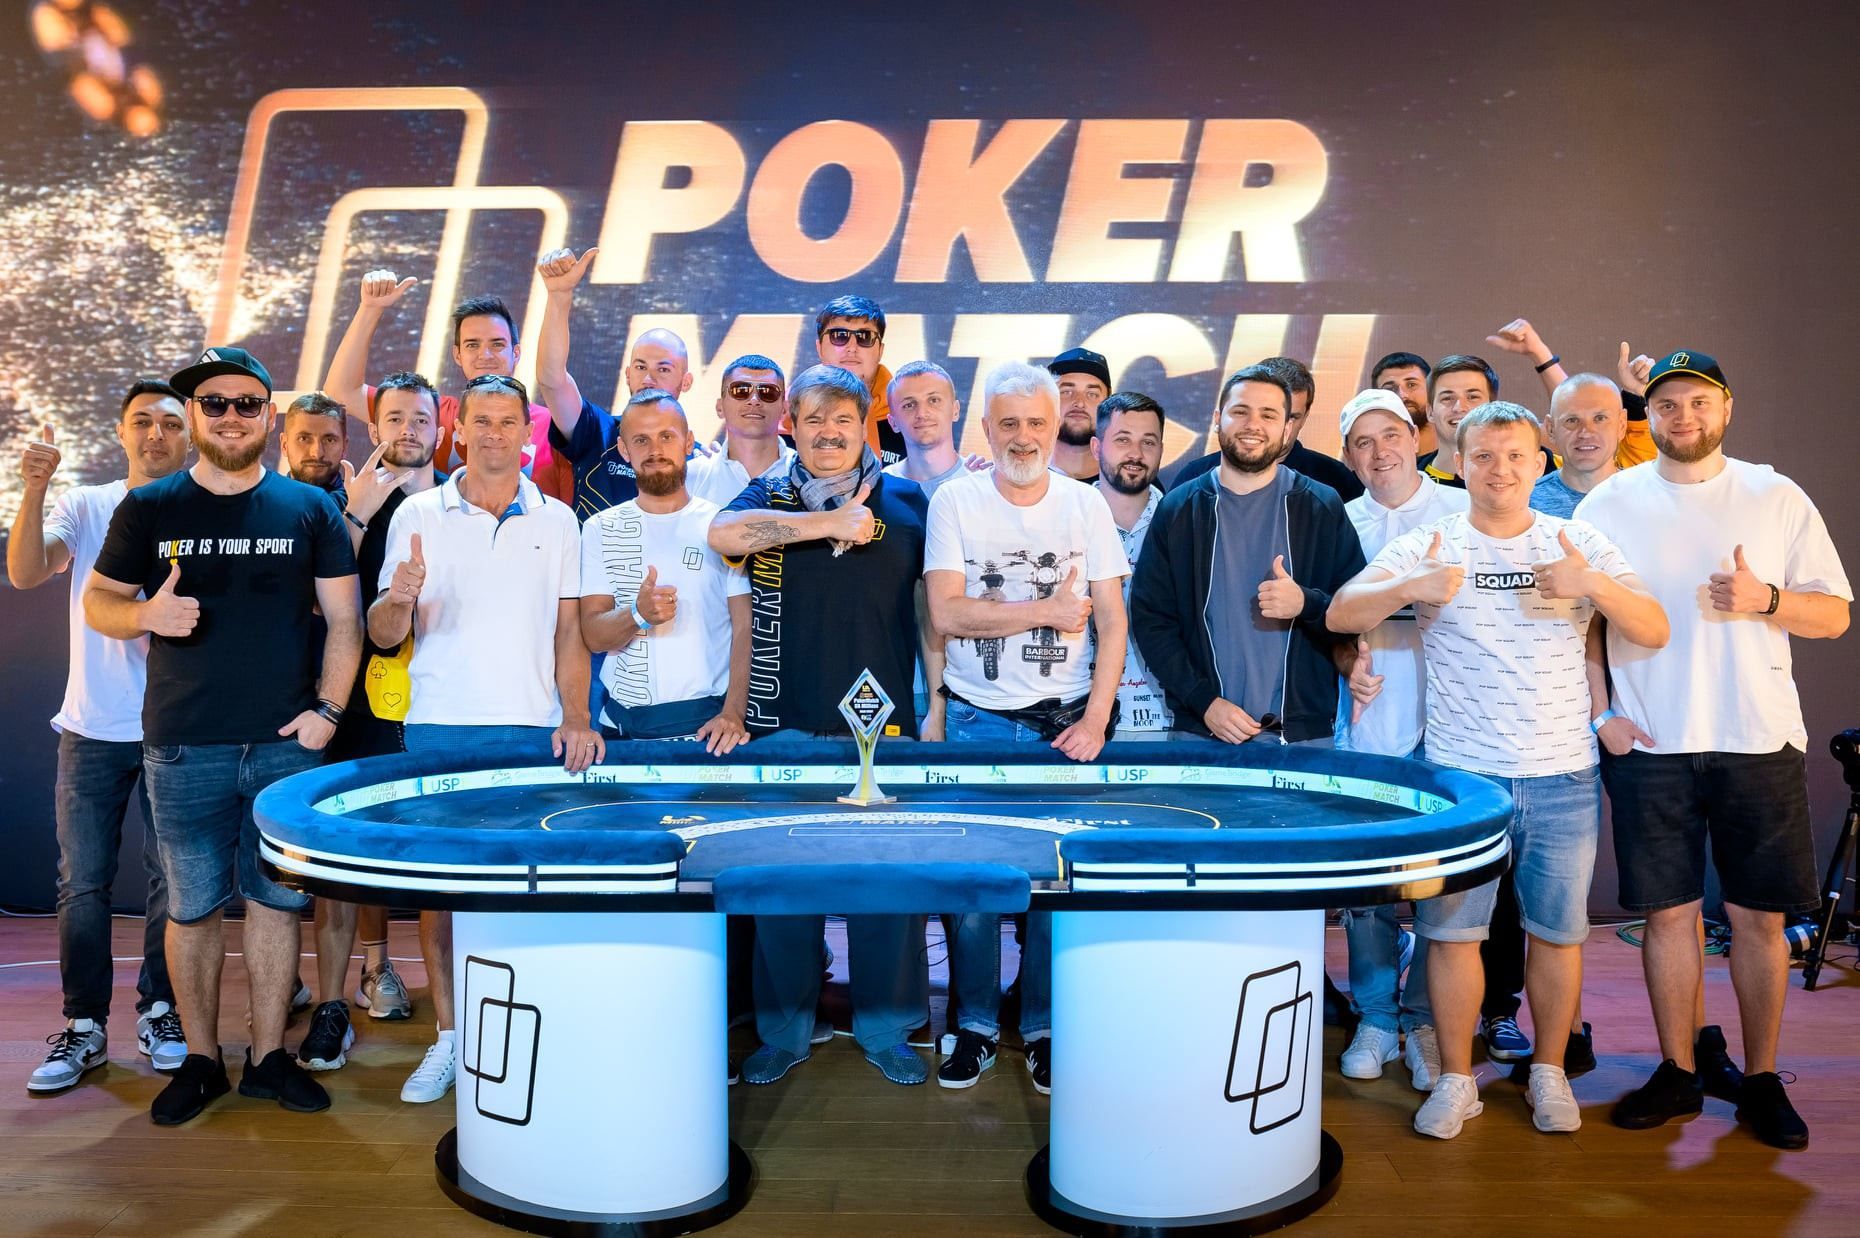 В Одессе разыграли более 10 миллионов гривен в серии PokerMatch UA Millions - Покер